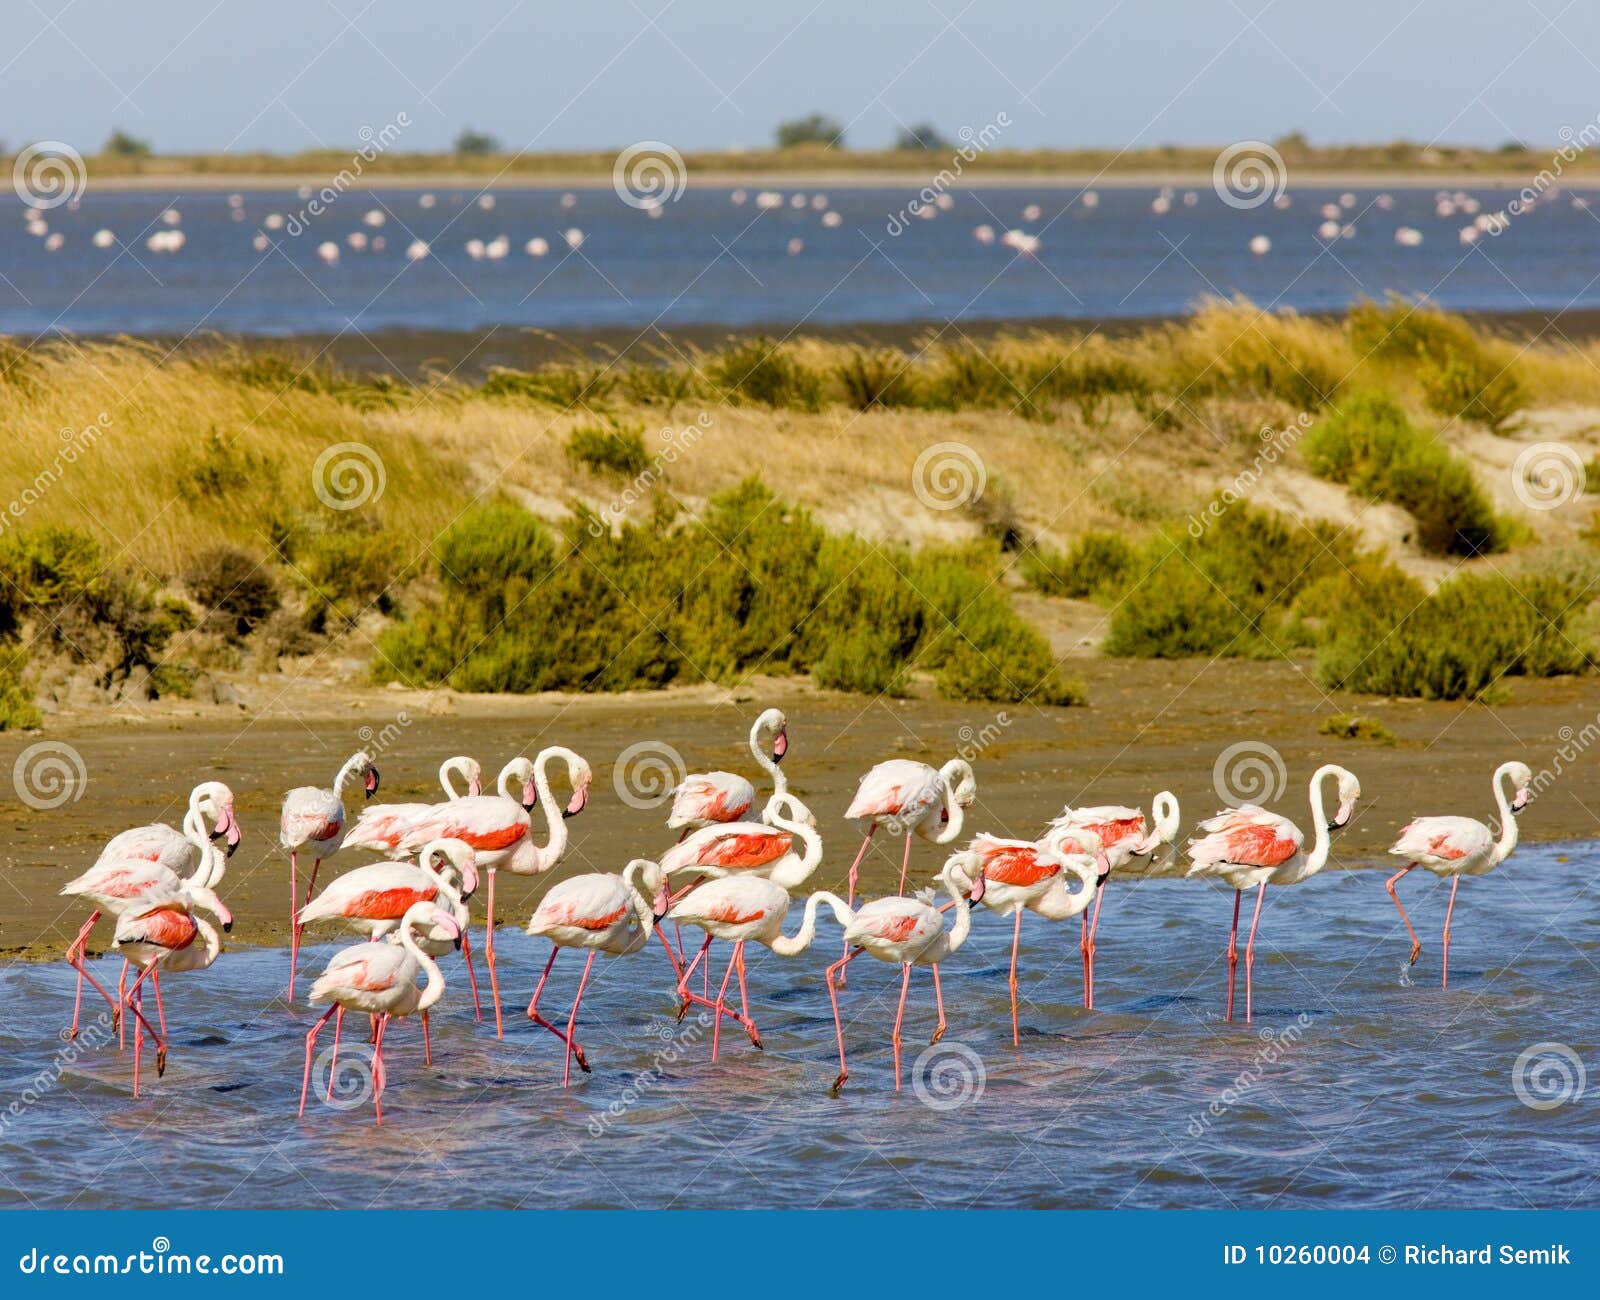 flamingos in camargue